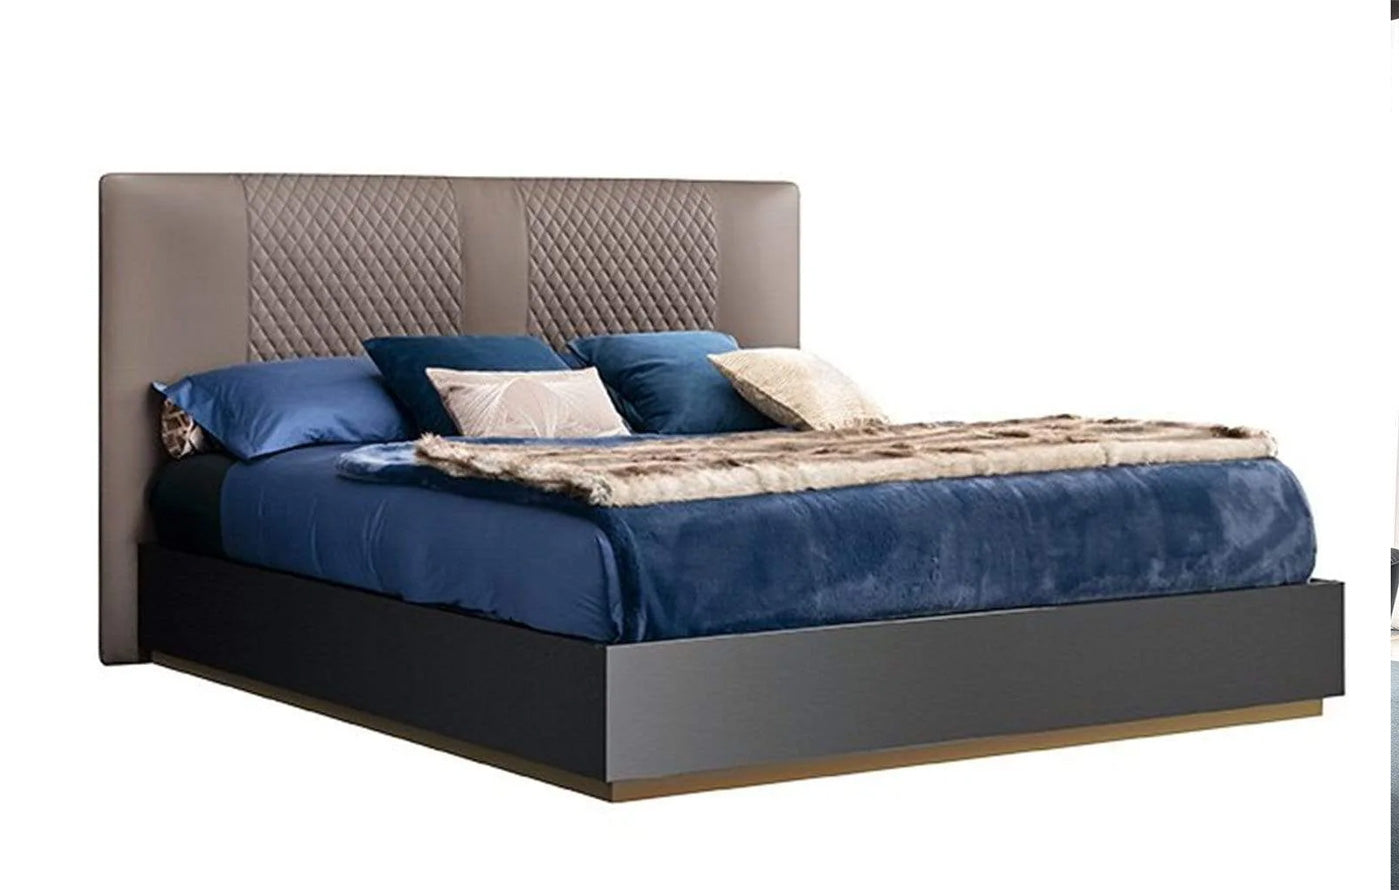 Oceanum Platform Bed | Alf Italia